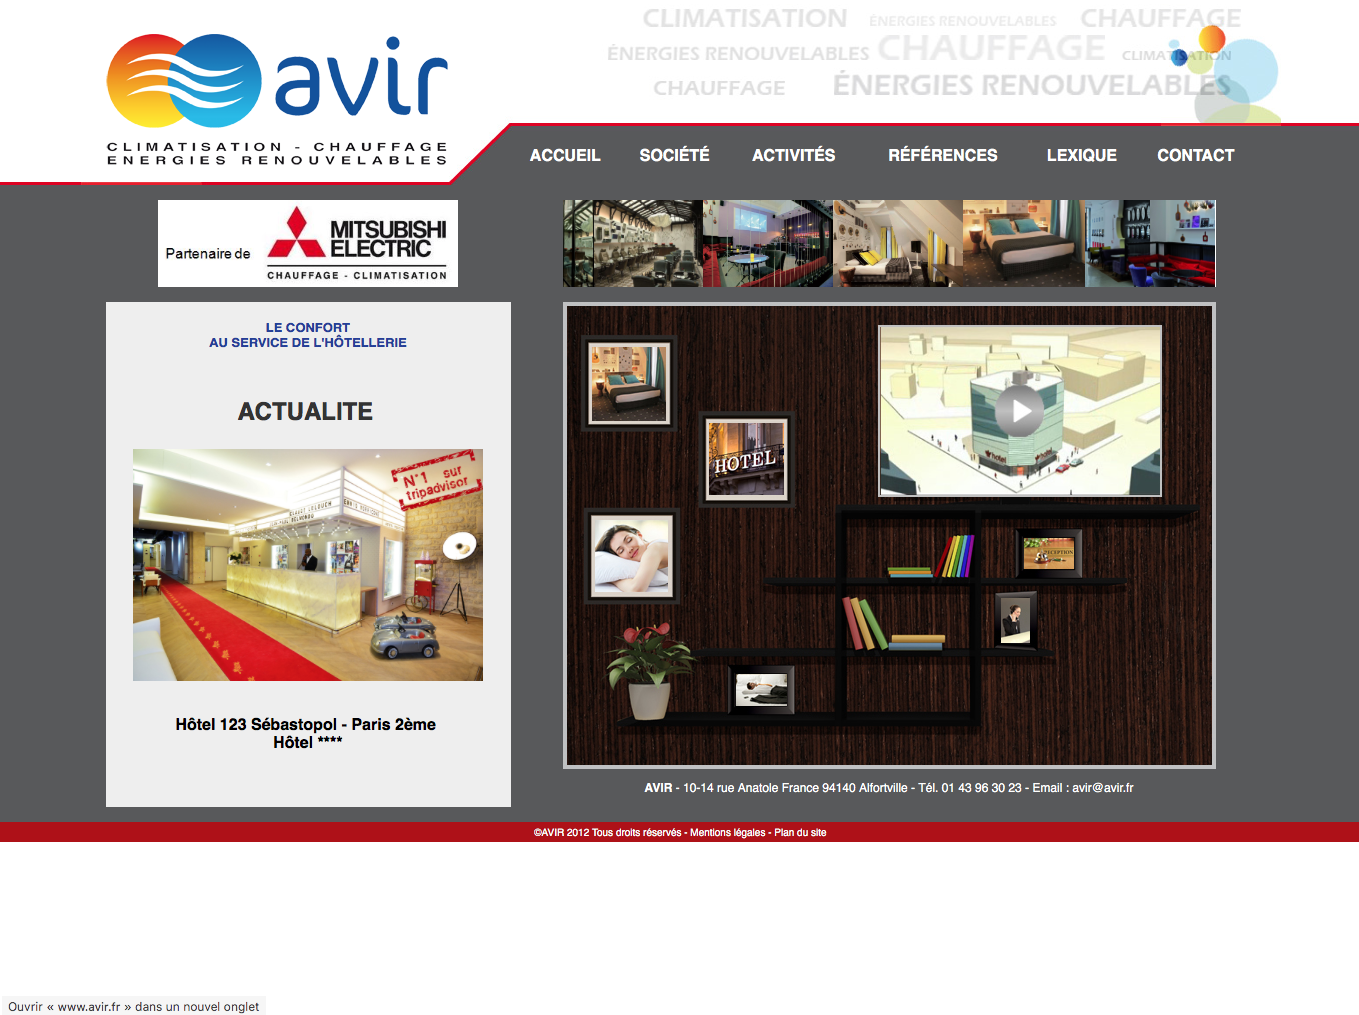 la société AVIR se spécialise dans le secteur informatique où les besoins en climatisation